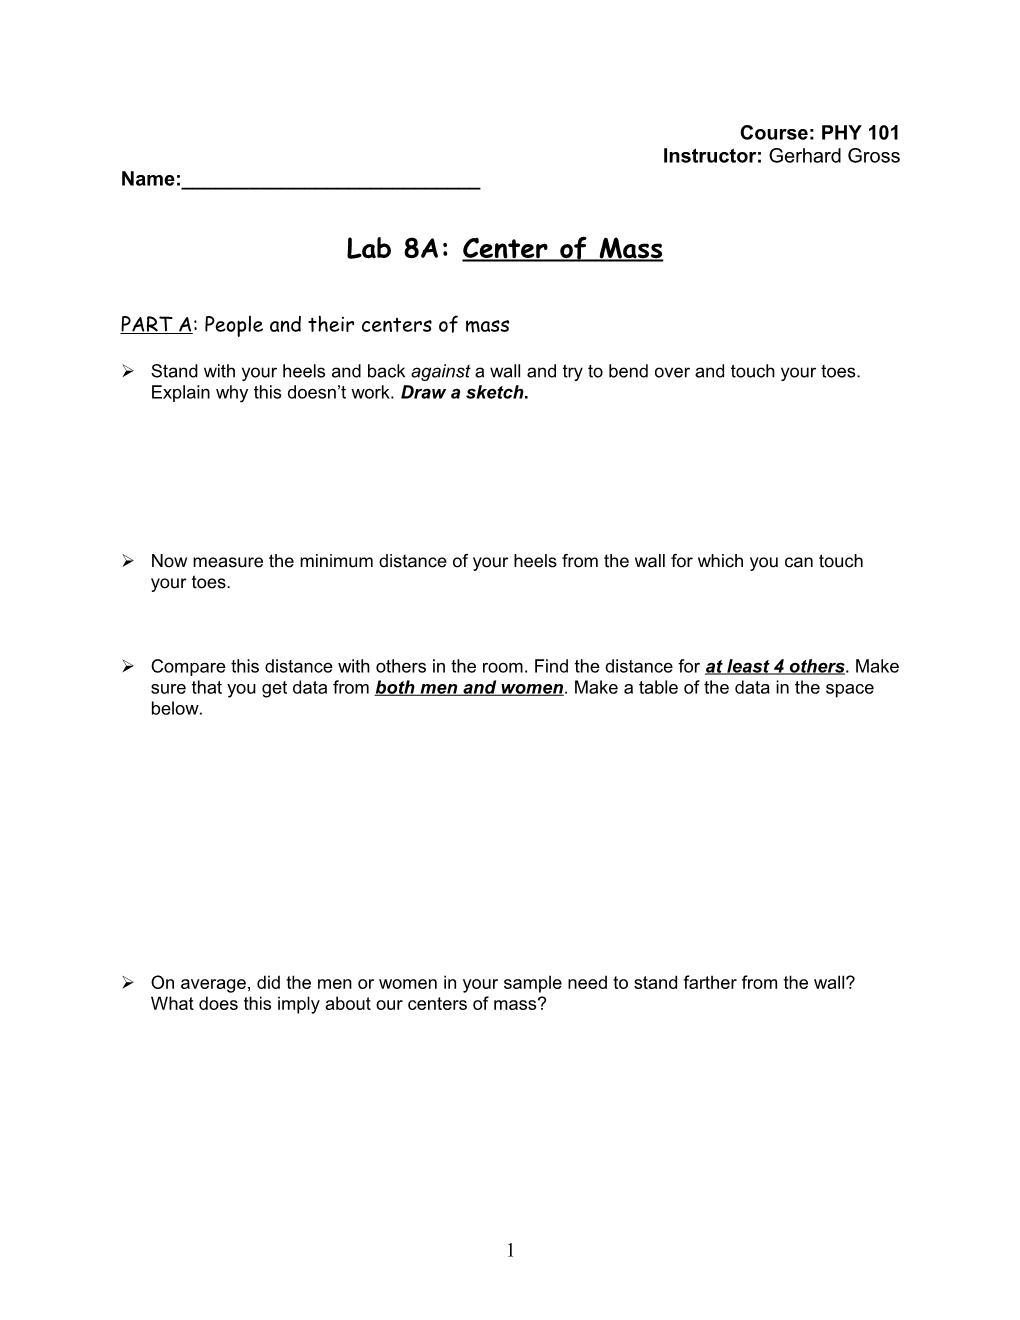 Lab 8A: Center of Mass